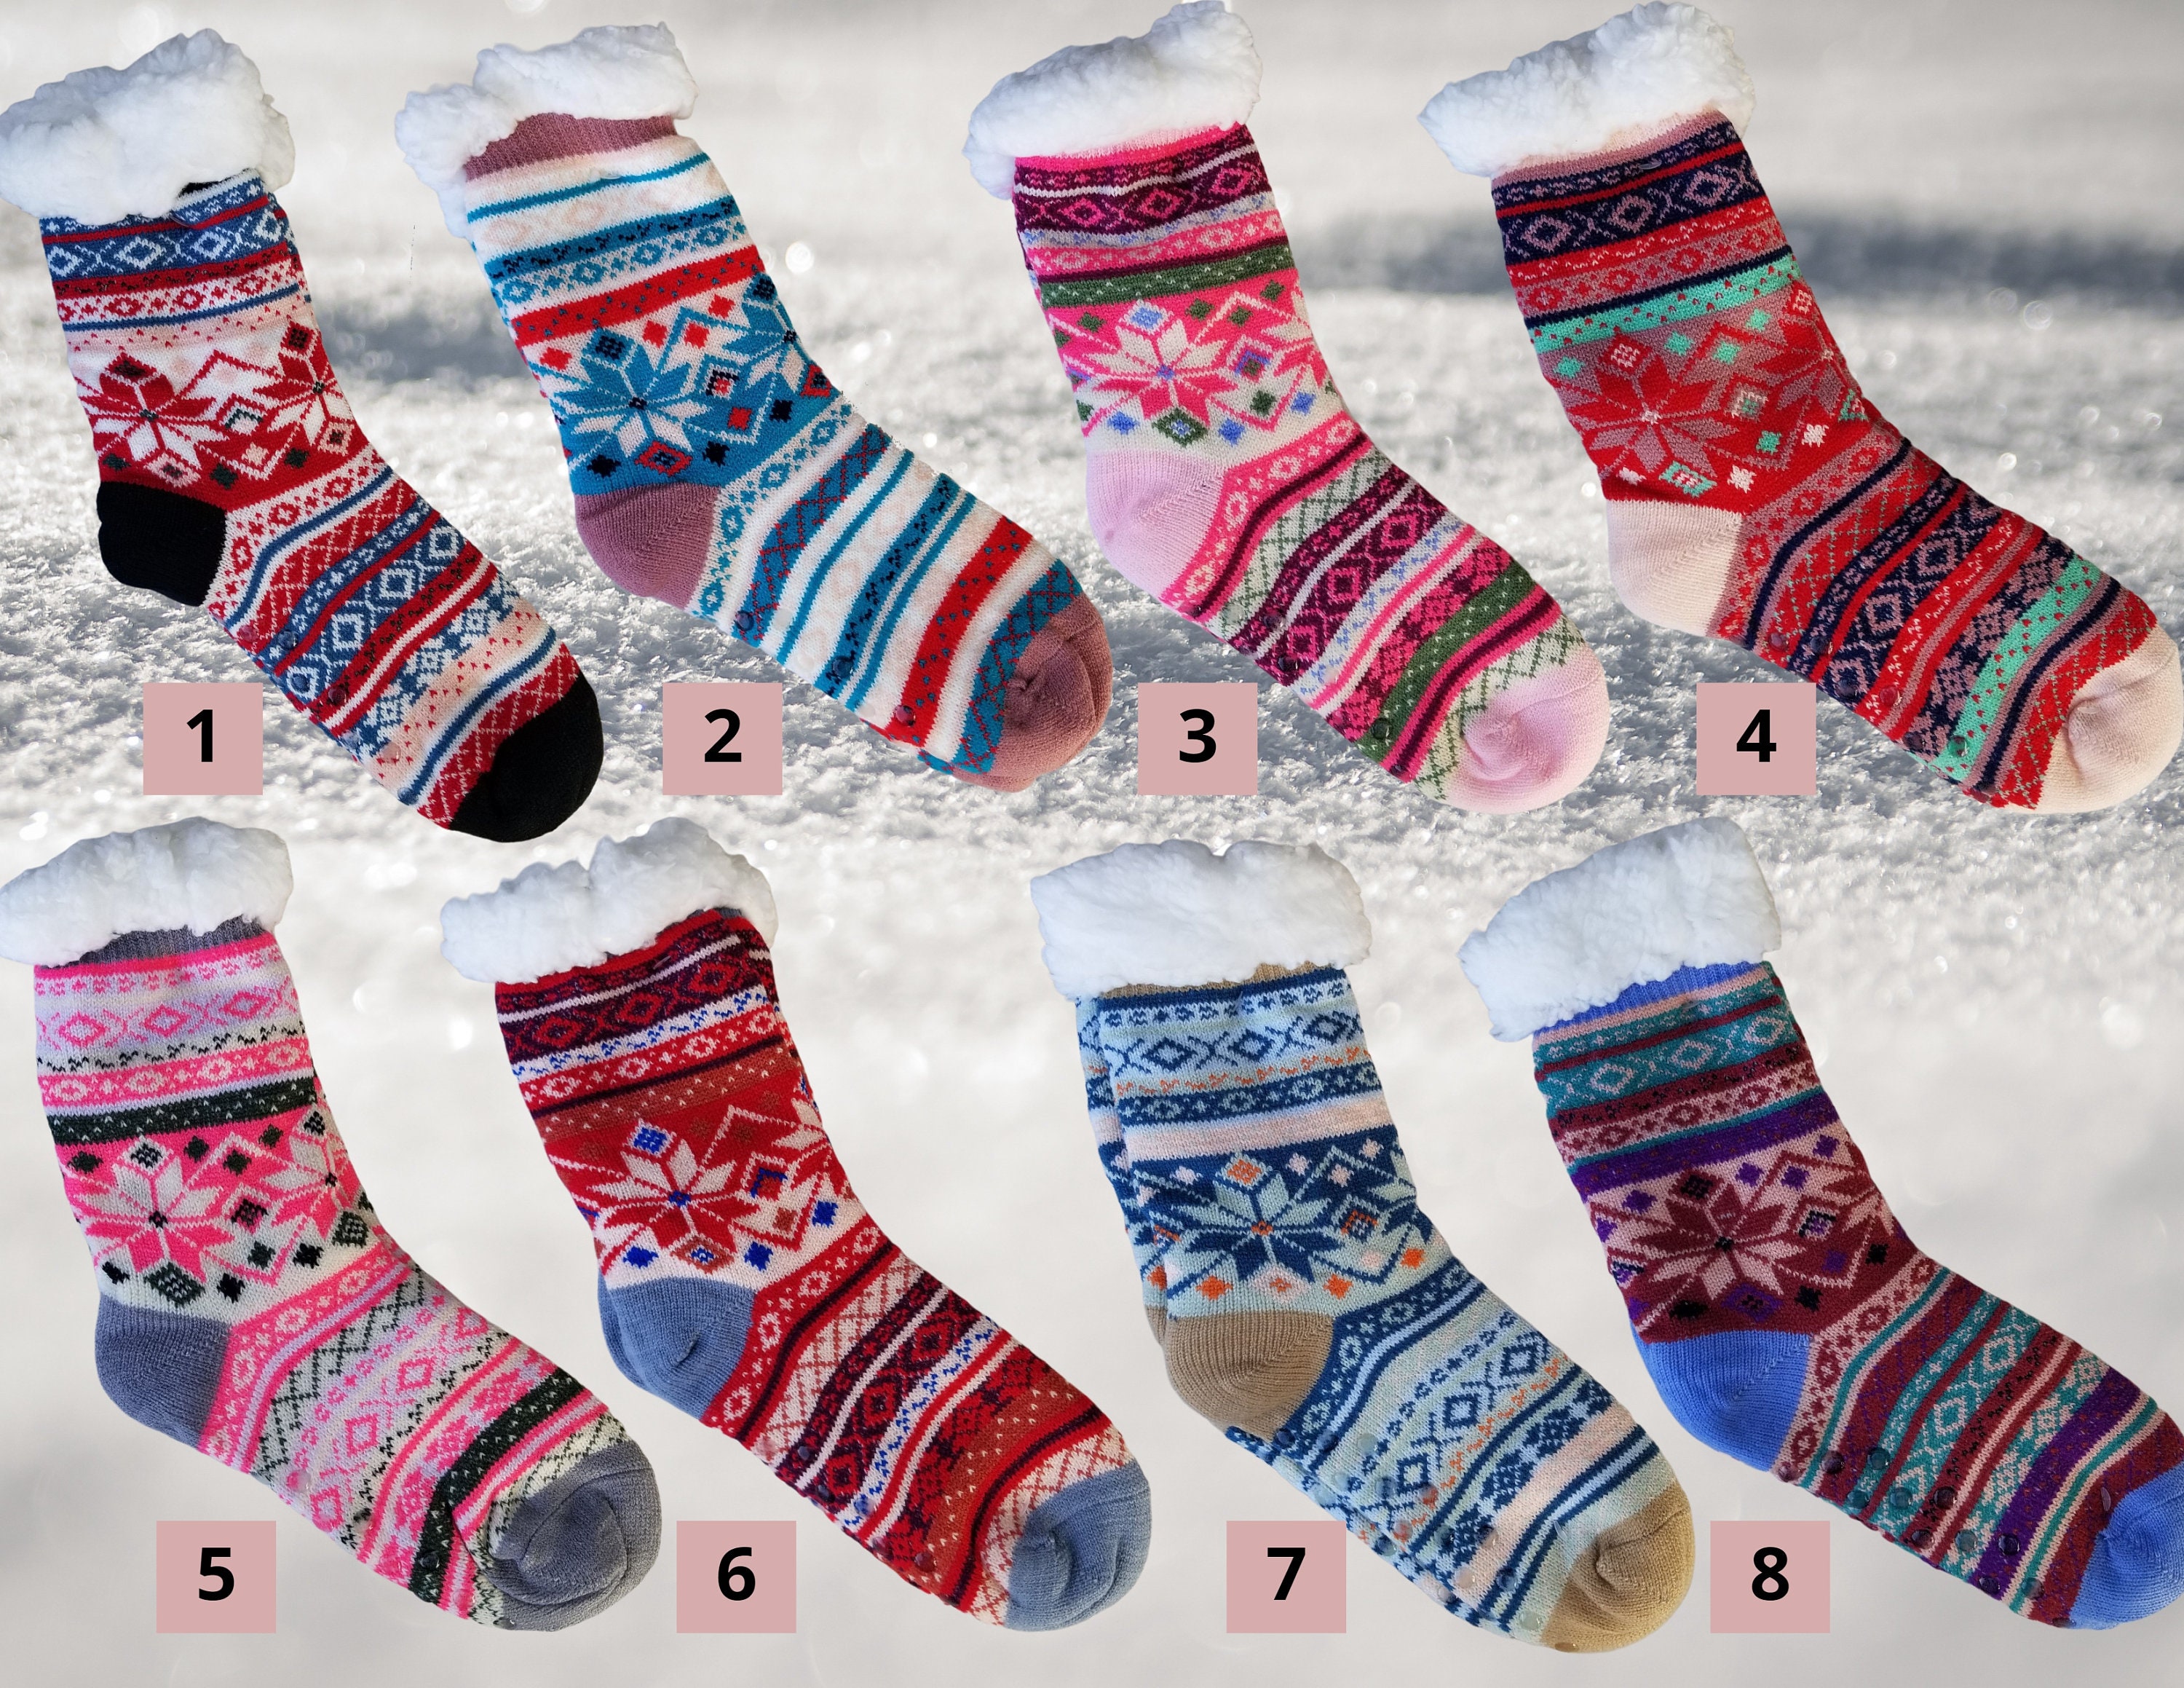 5 Pack Fuzzy Anti-Slip Socks for Women Girls Non Slip Slipper Socks with  Grippers, Gift For Her, Gift For Mom